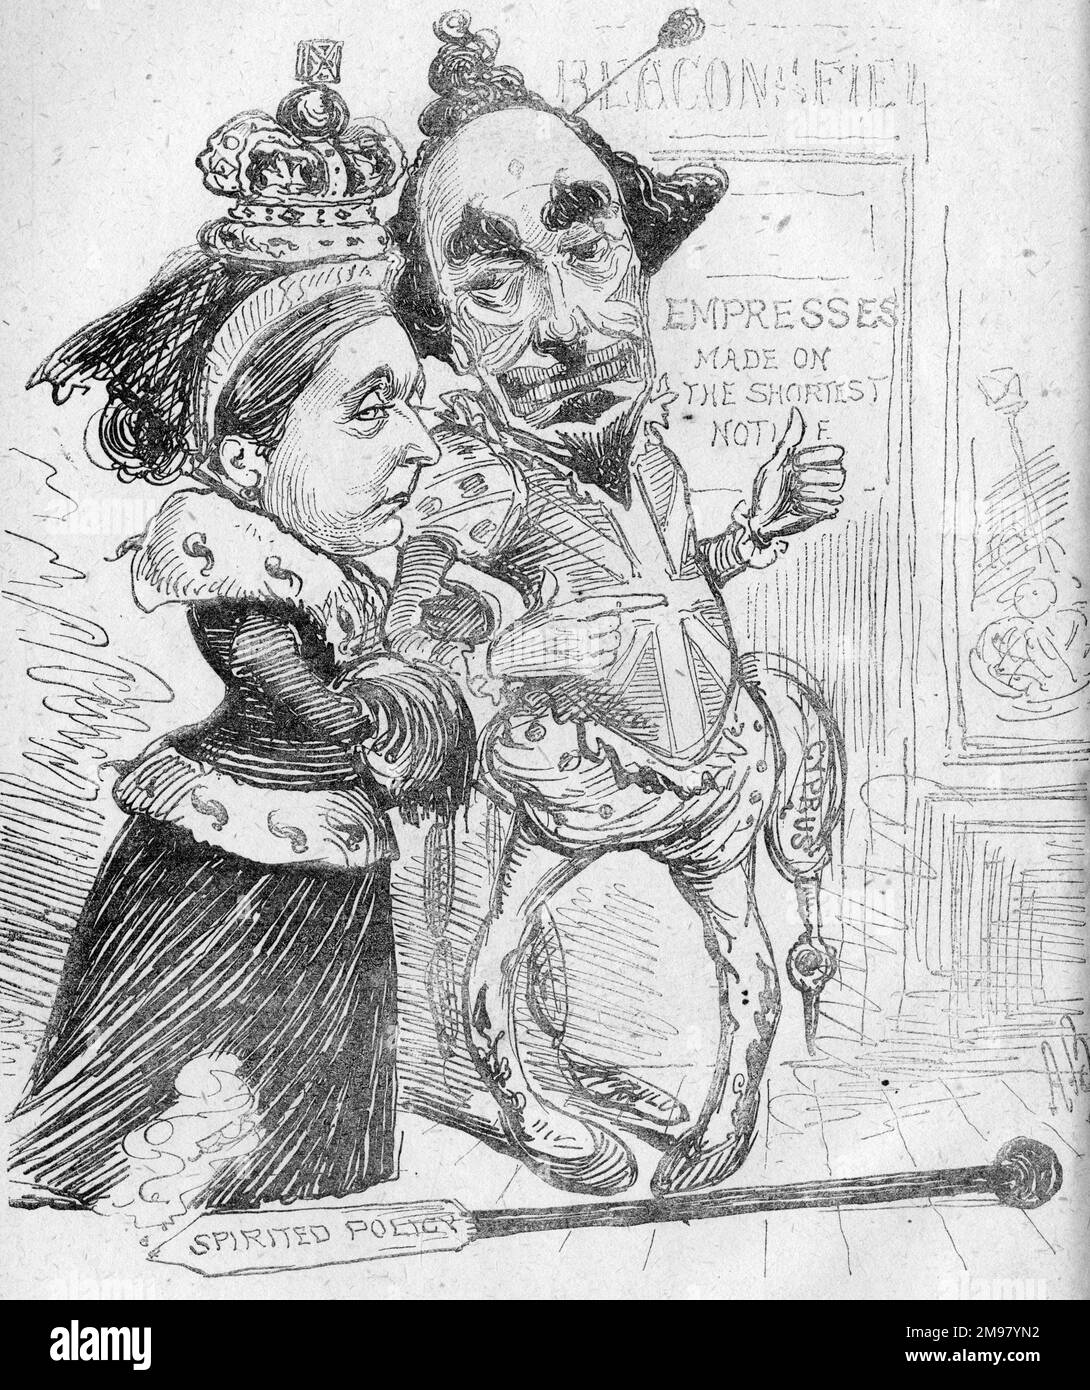 Cartoon, das große orientalische Pantomime, spielte vor drei Jahren im Imperial Theatre. Sie zeigt Queen Victoria Arm in Arm mit Benjamin Disraeli (Lord Beaconsfield), der das Kostüm eines Clowns trägt. Stockfoto